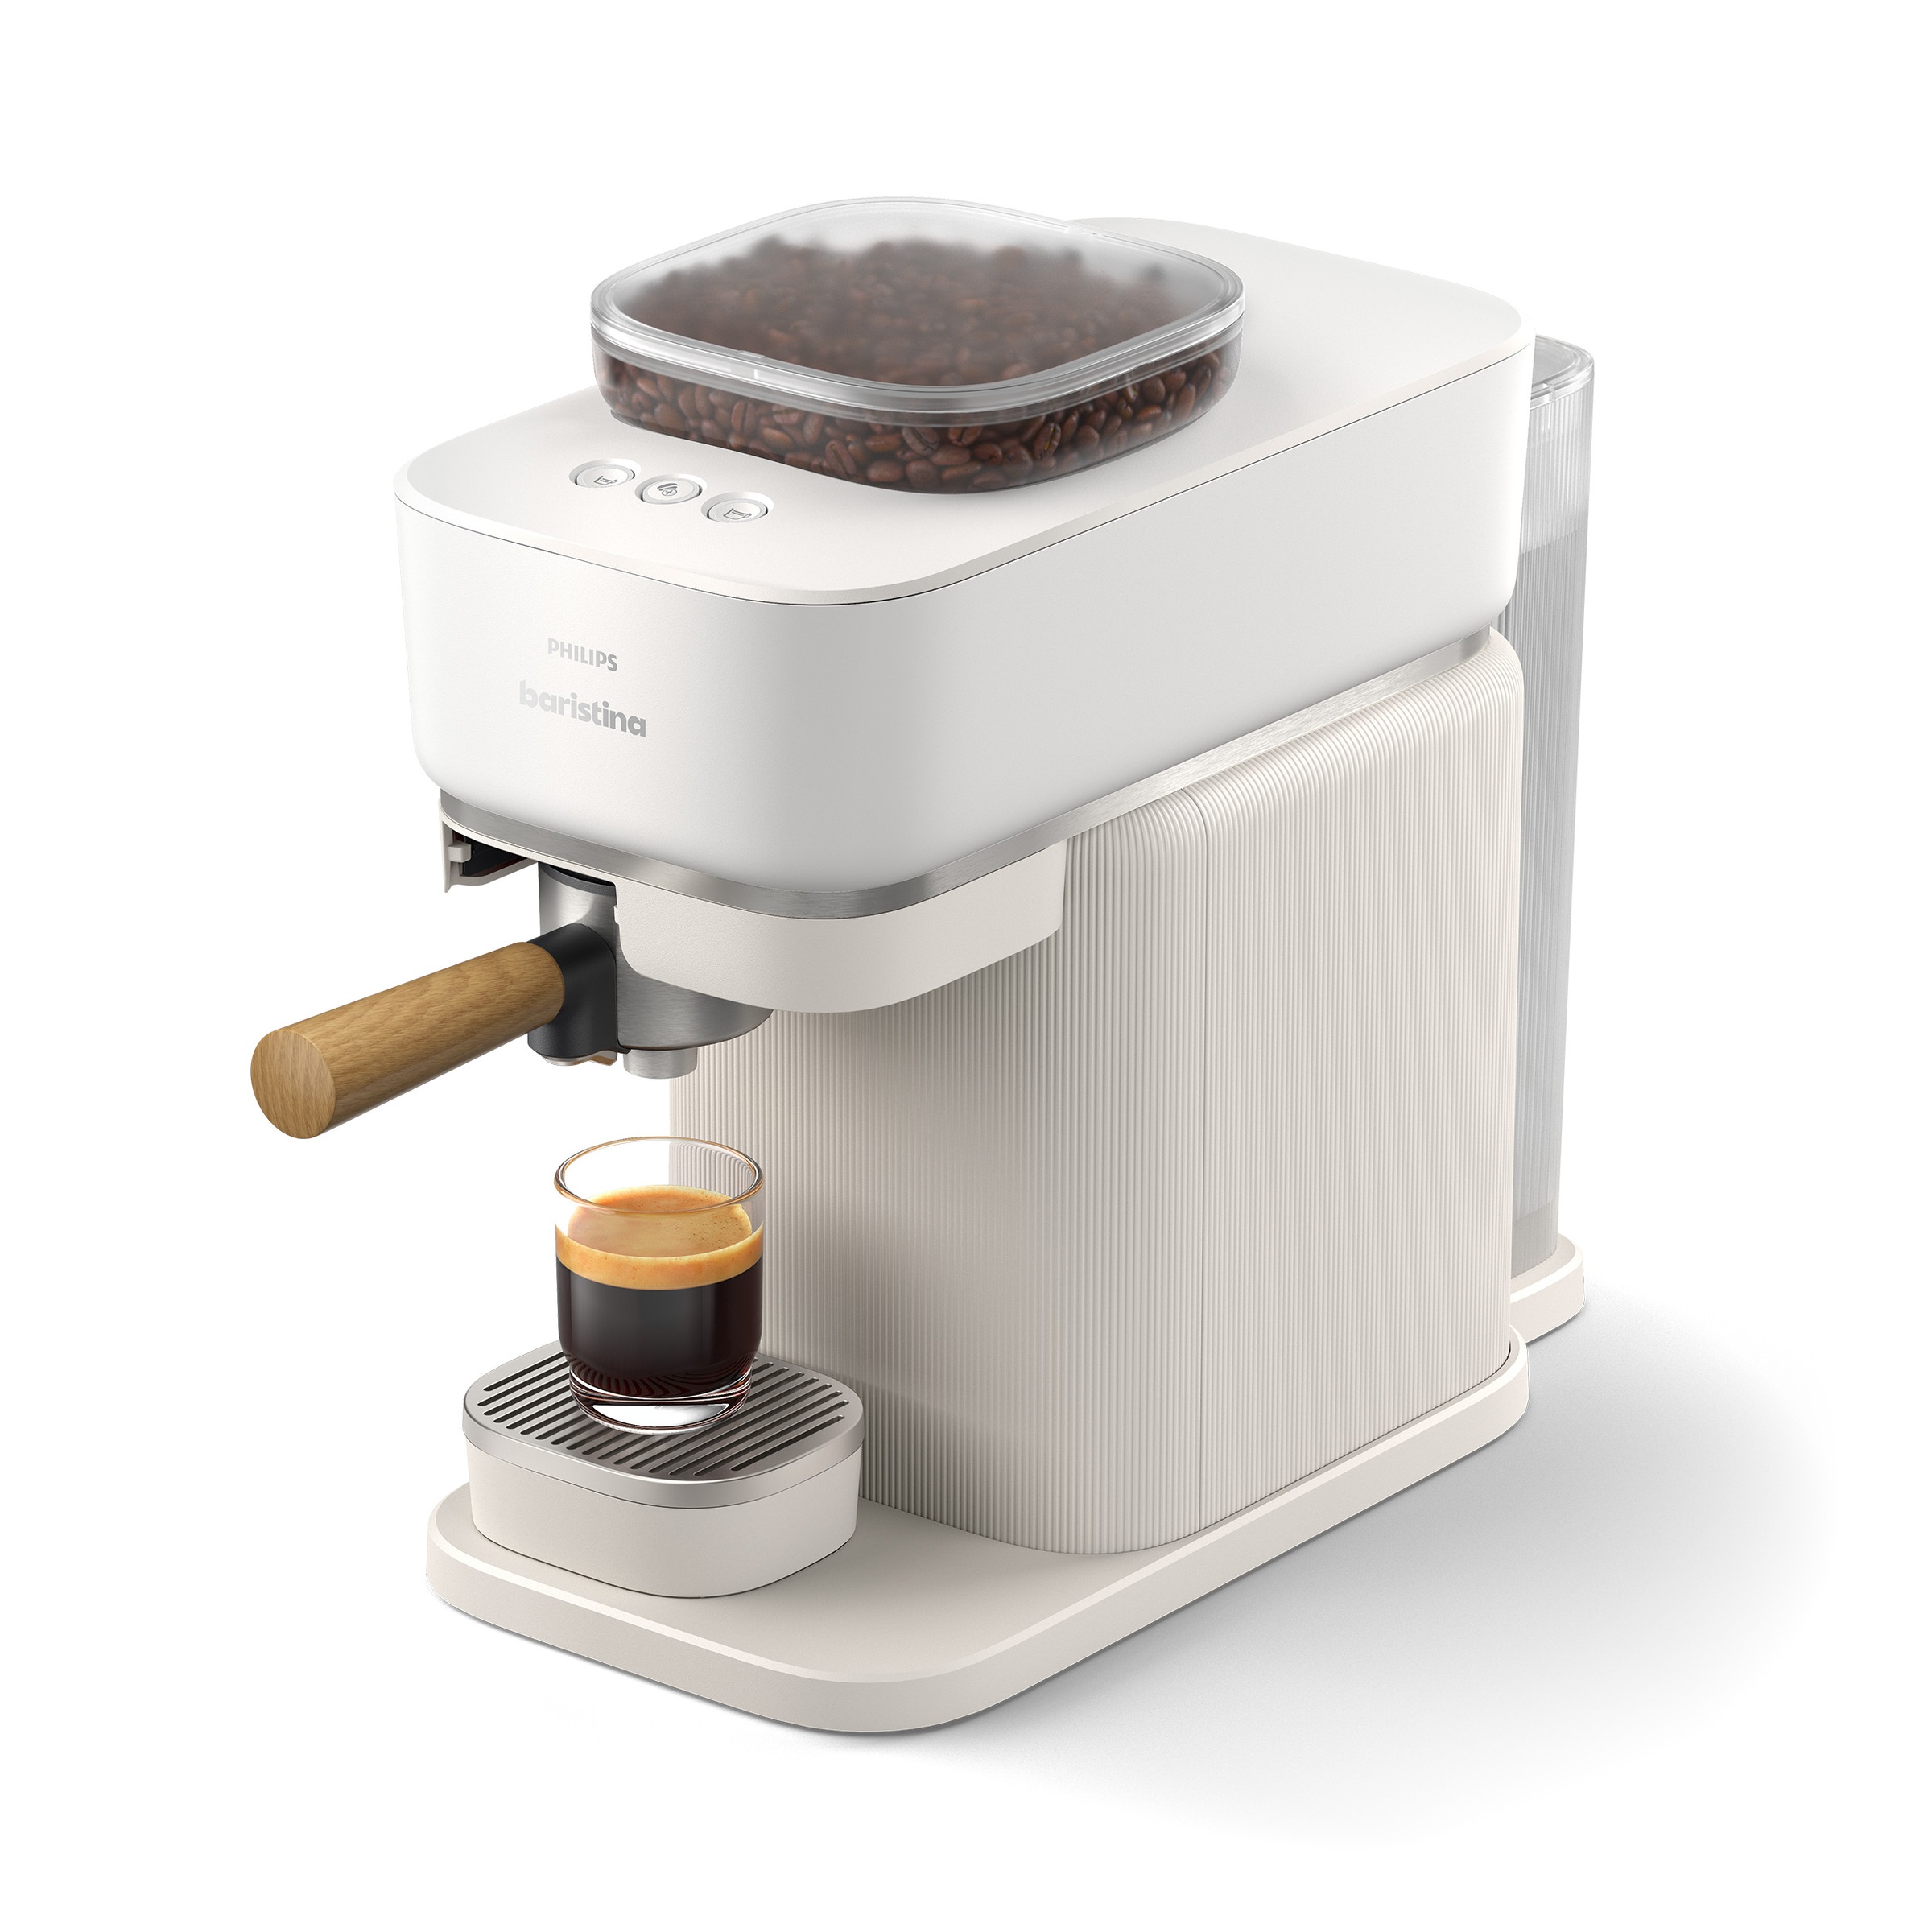 PHILIPS baristina Espressomaschine »BAR302/20 mit Mahlwerk für ganze Bohnen«, 16 bar Pumpendruck, Naturweiß/Eschenholz